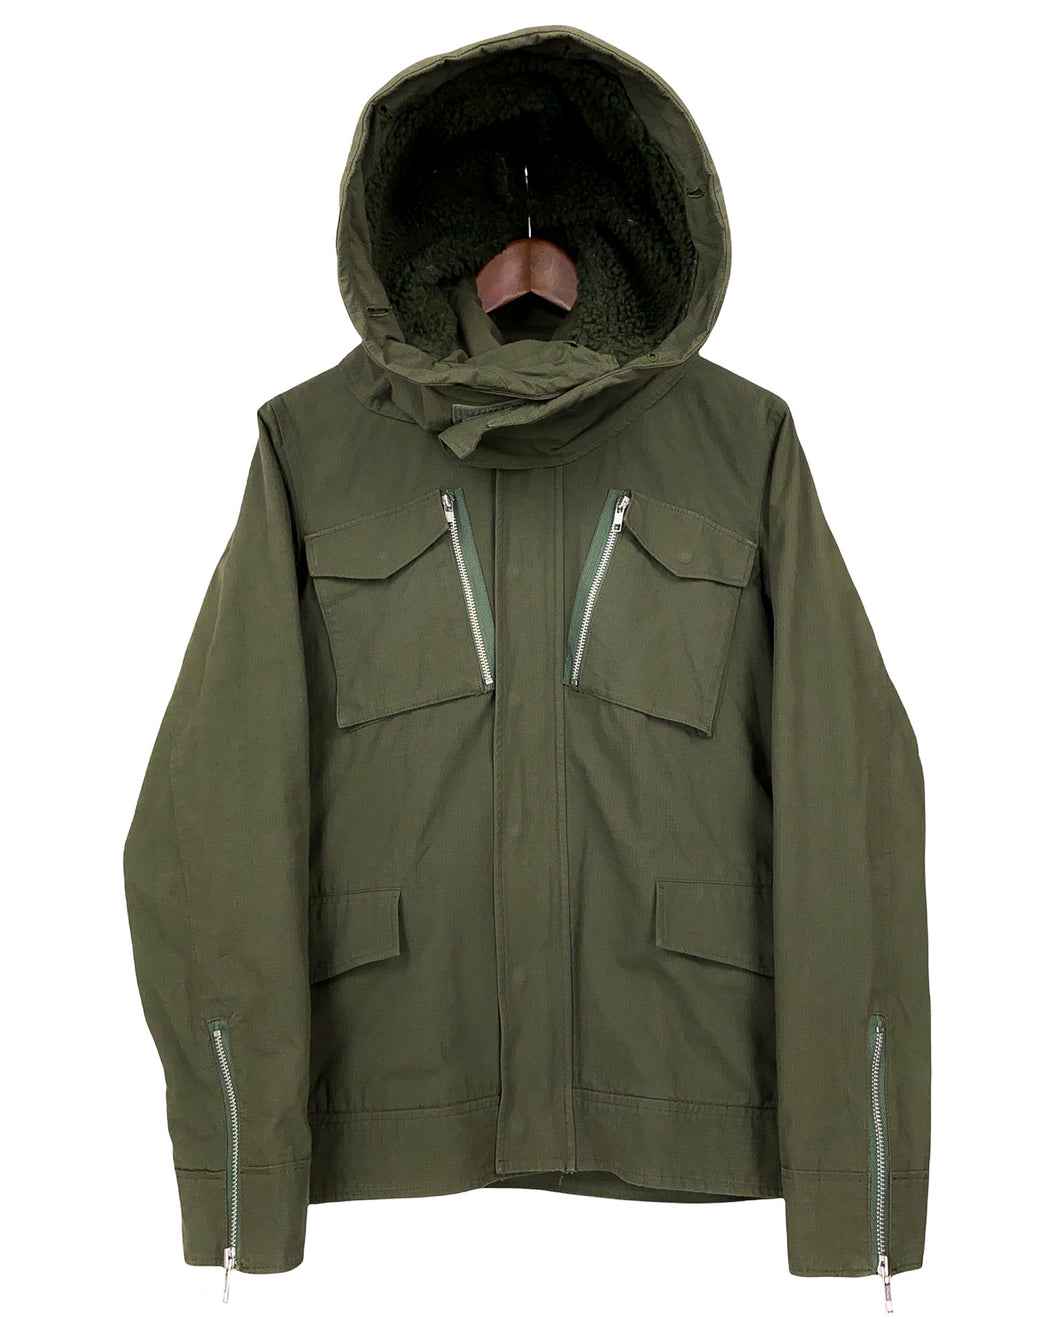 WHIZ LTD. Oversized Hood Field Jacket (2000’s)